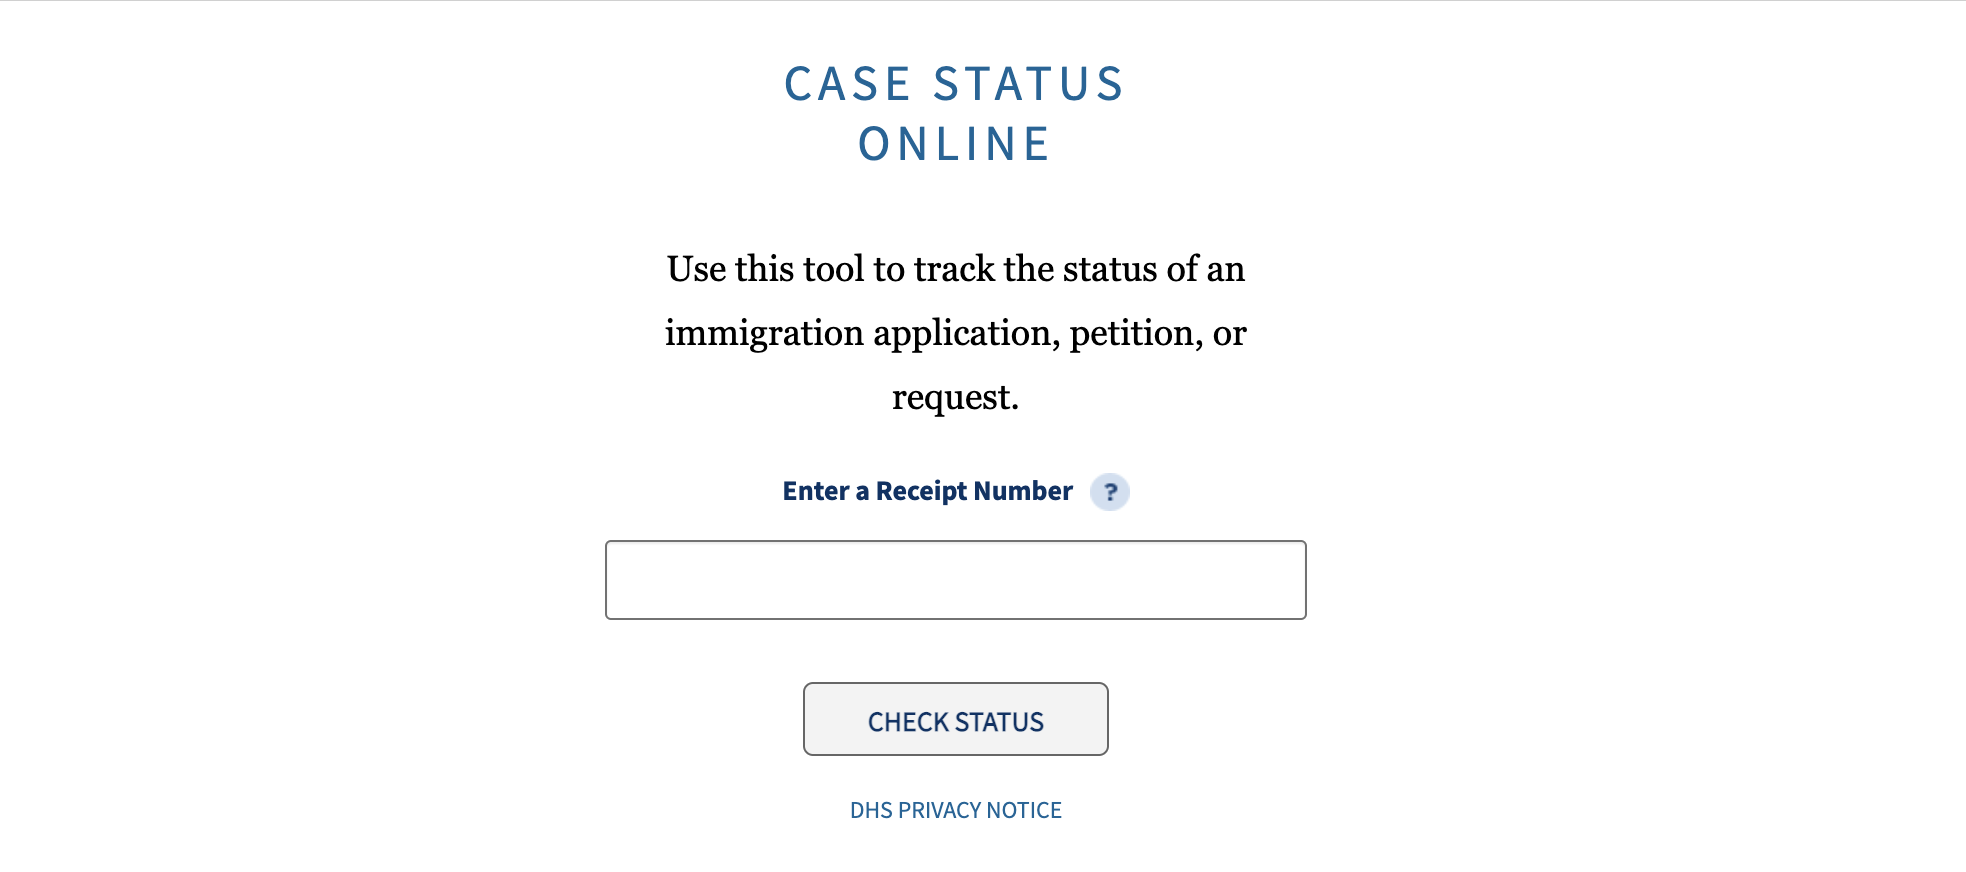 USCIS Case Status Online Tool